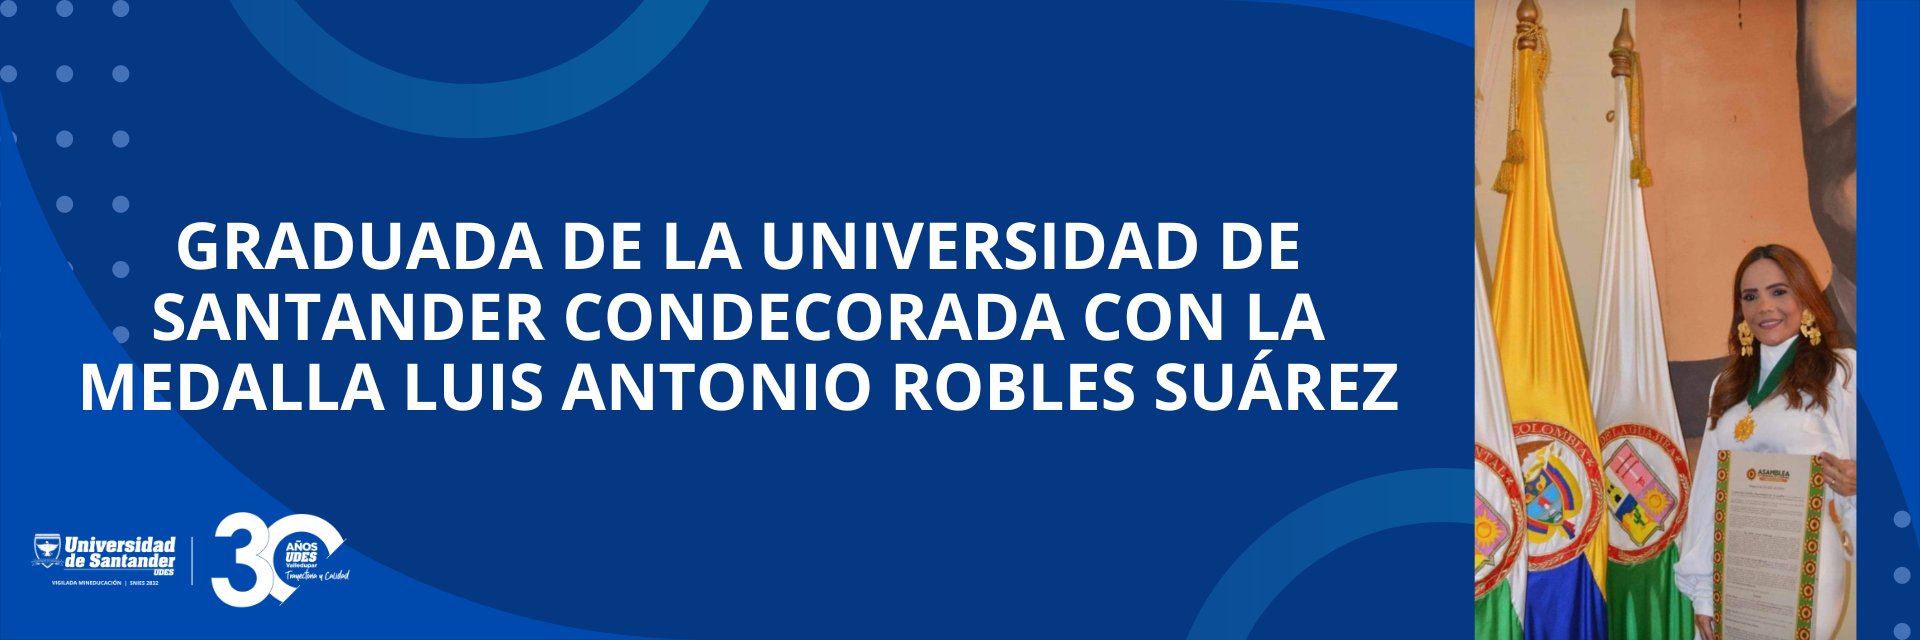 Graduada de la Universidad de Santander condecorada con la medalla Luis Antonio Robles Suárez